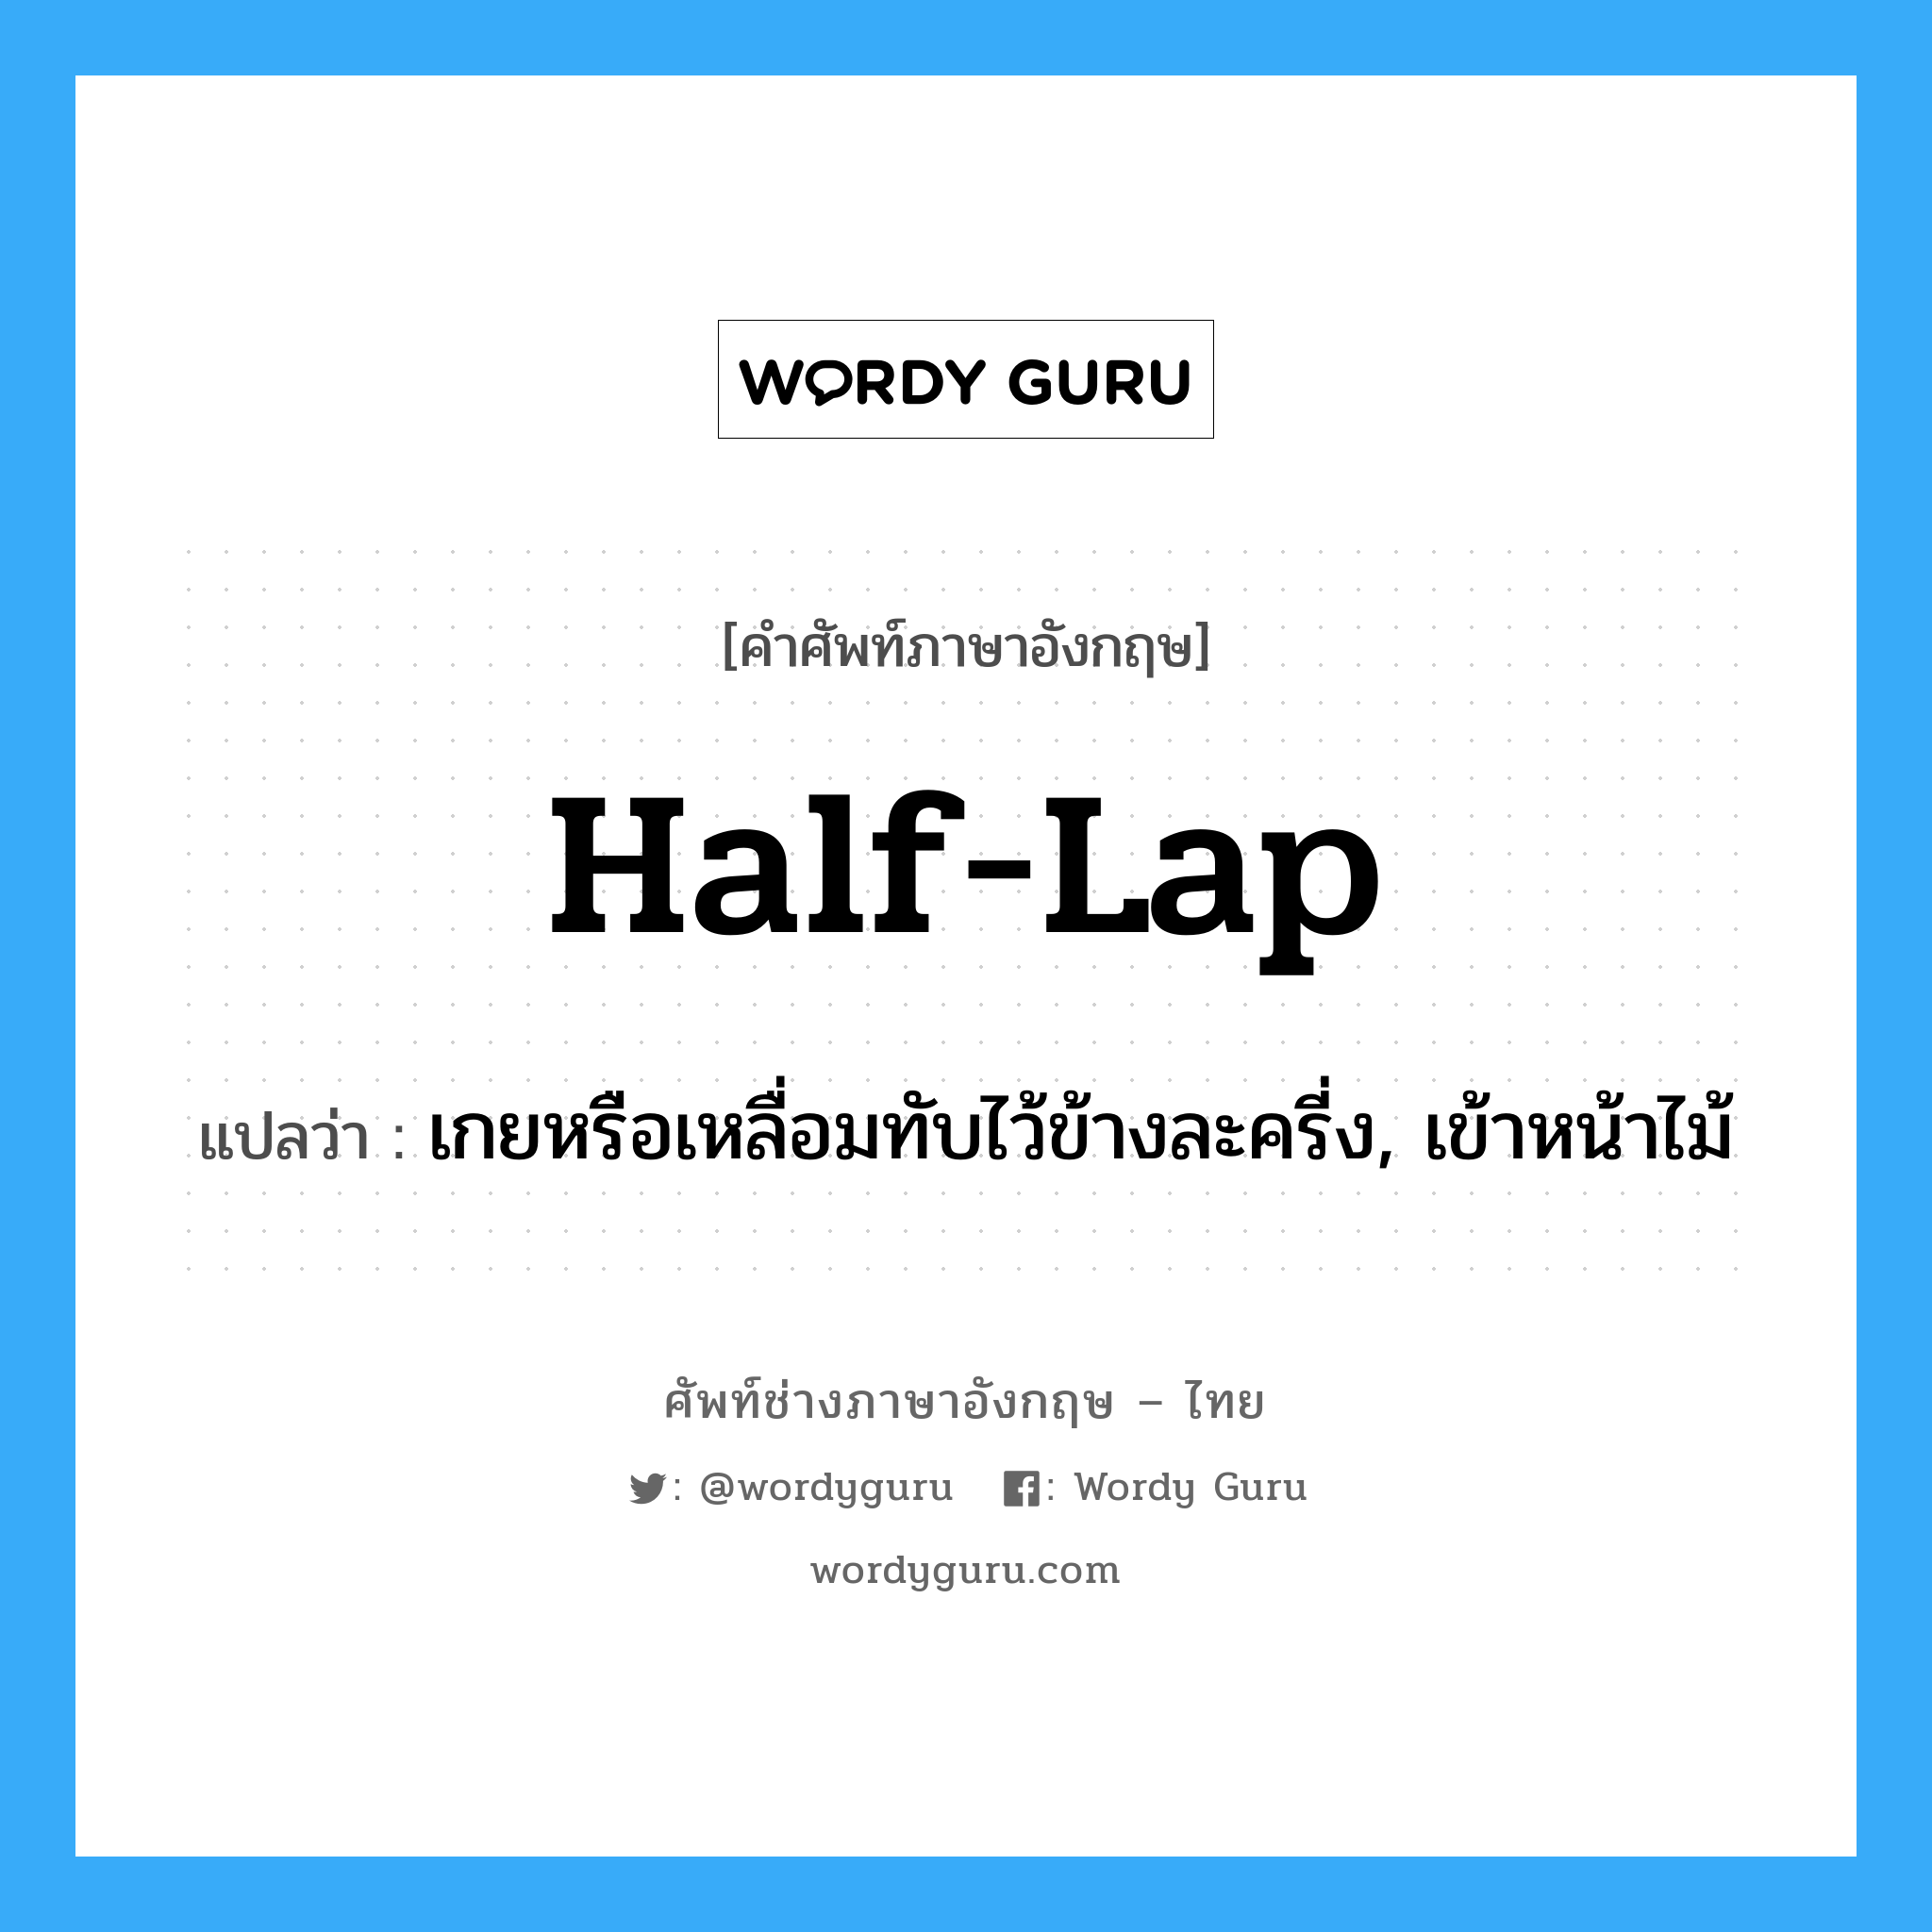 half-lap แปลว่า?, คำศัพท์ช่างภาษาอังกฤษ - ไทย half-lap คำศัพท์ภาษาอังกฤษ half-lap แปลว่า เกยหรือเหลื่อมทับไว้ข้างละครี่ง, เข้าหน้าไม้